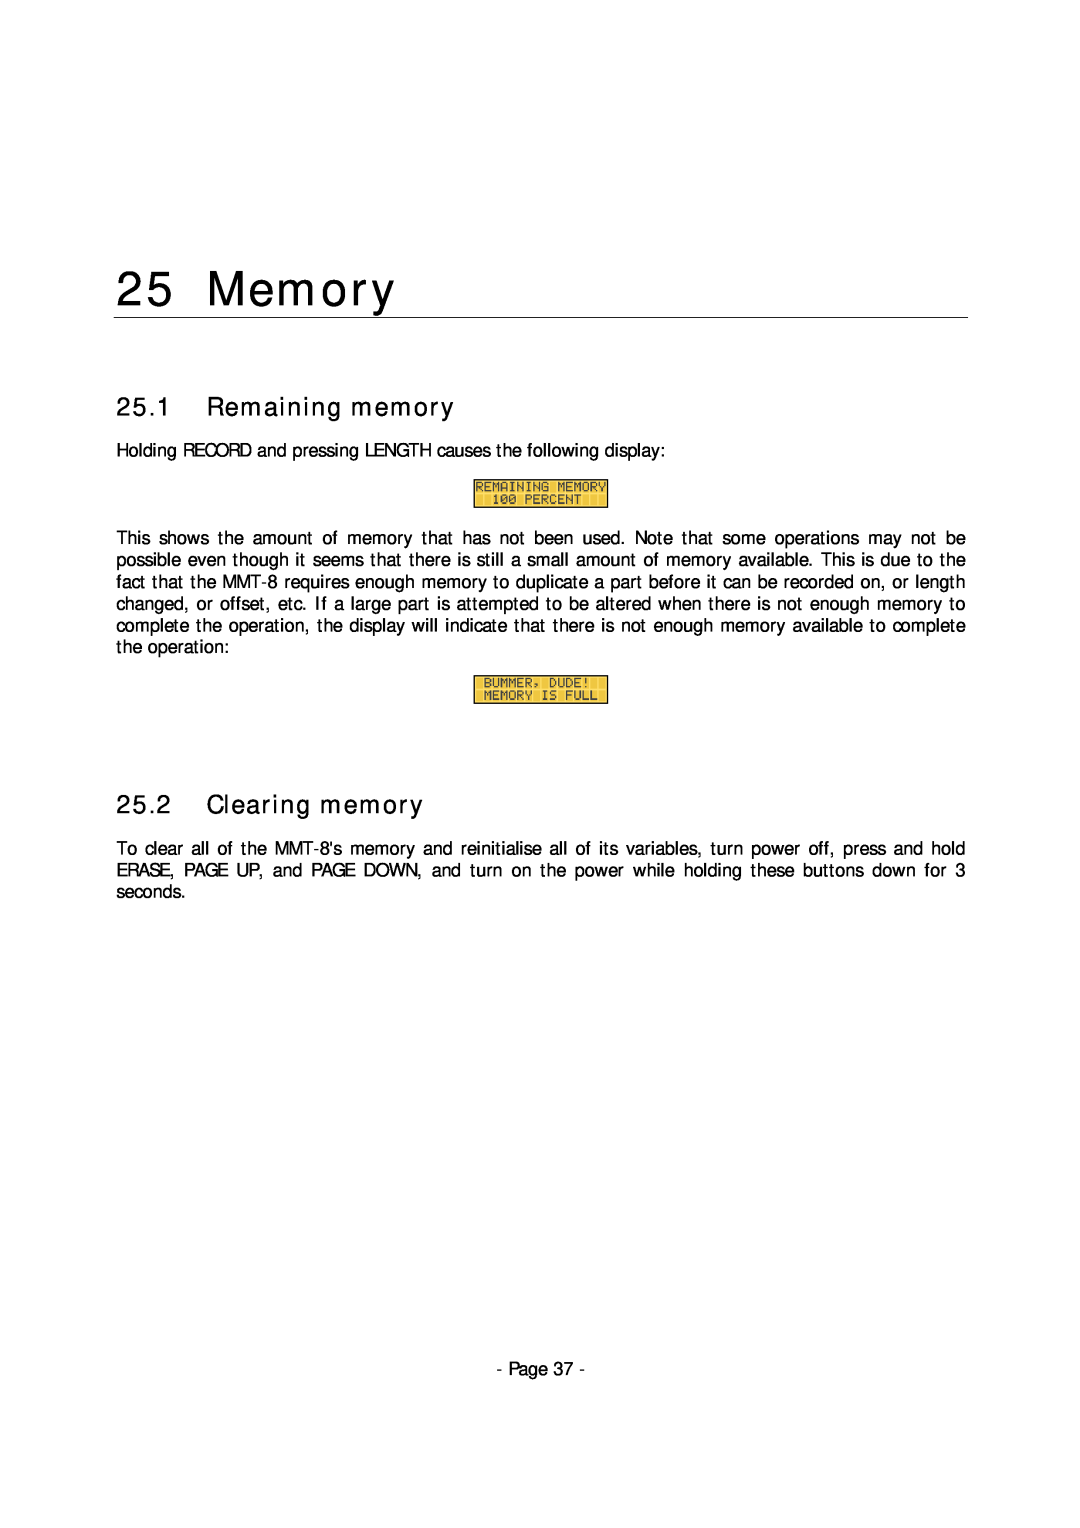 Alesis MMT-8 manual Memory, 25.1Remaining memory, 25.2Clearing memory 